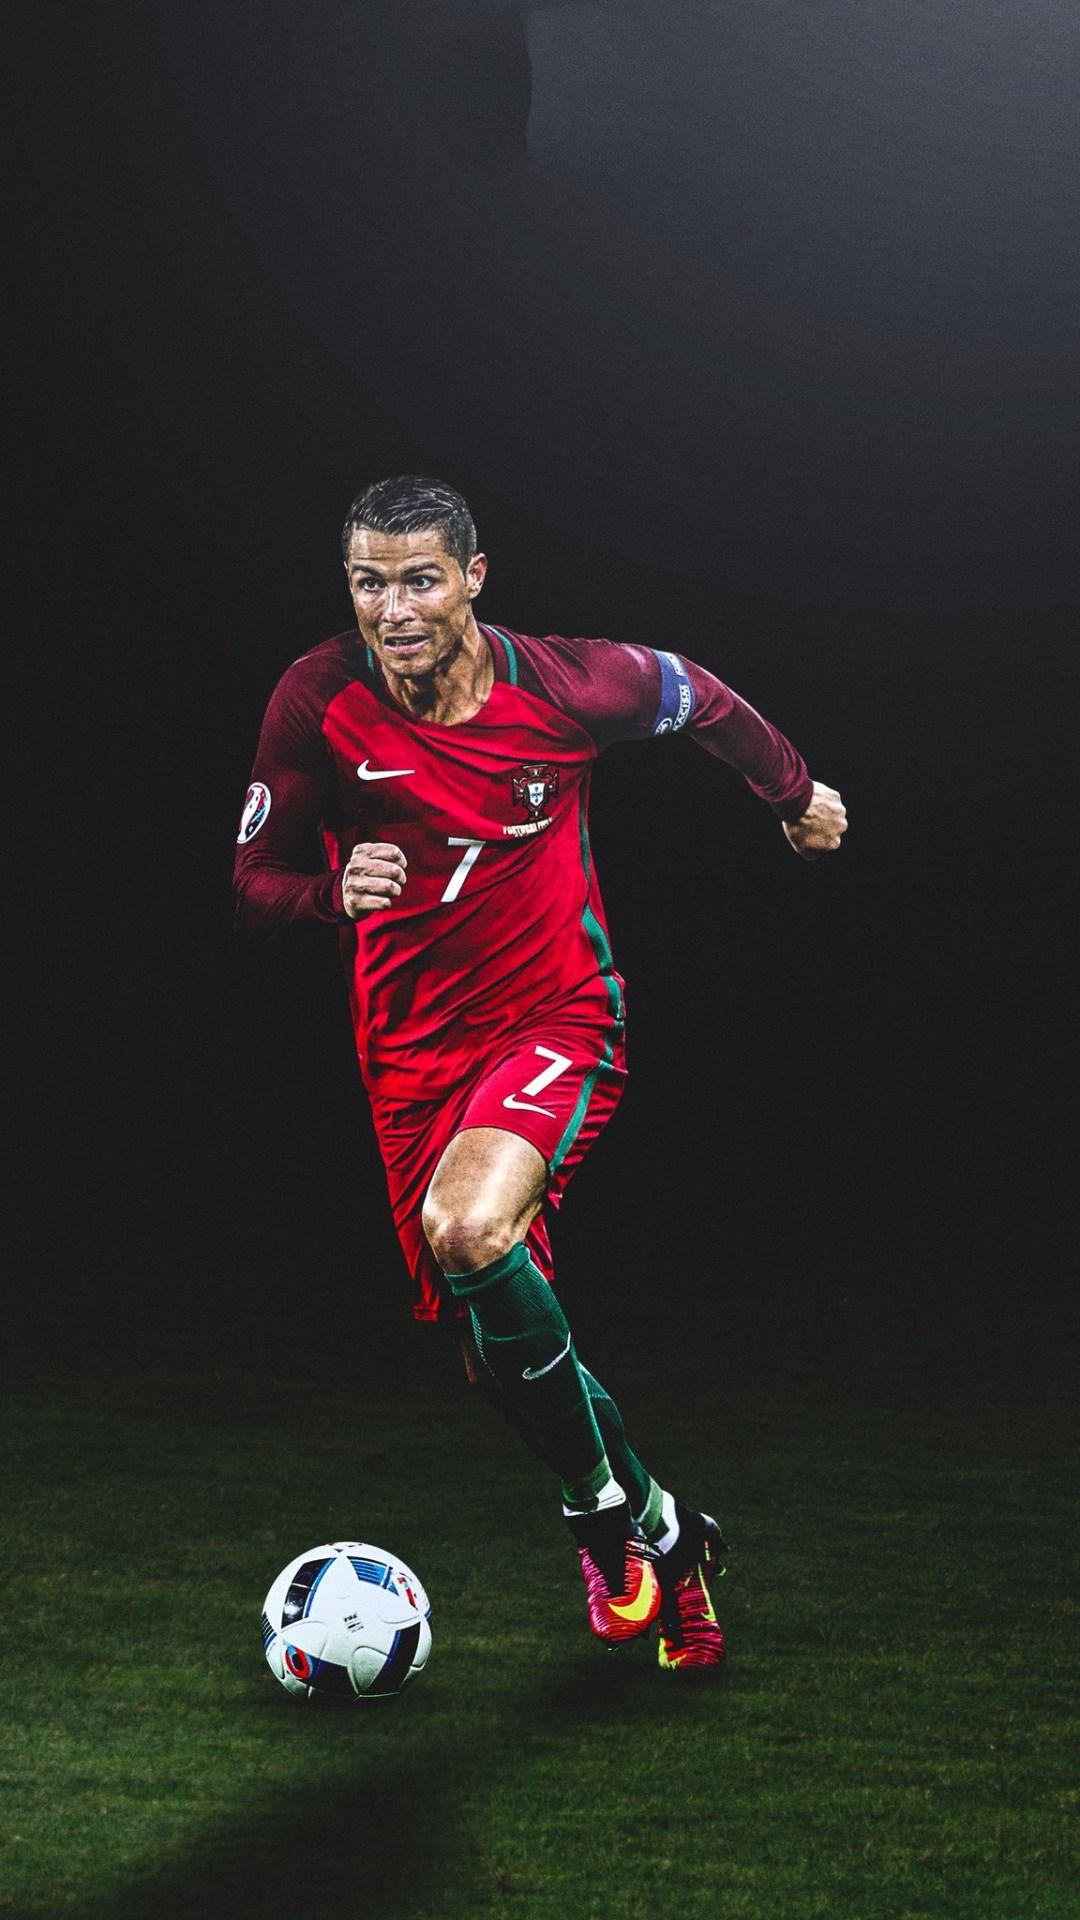 Ronaldo iPhone Wallpapers -Top 25 Best Ronaldo iPhone Wallpapers